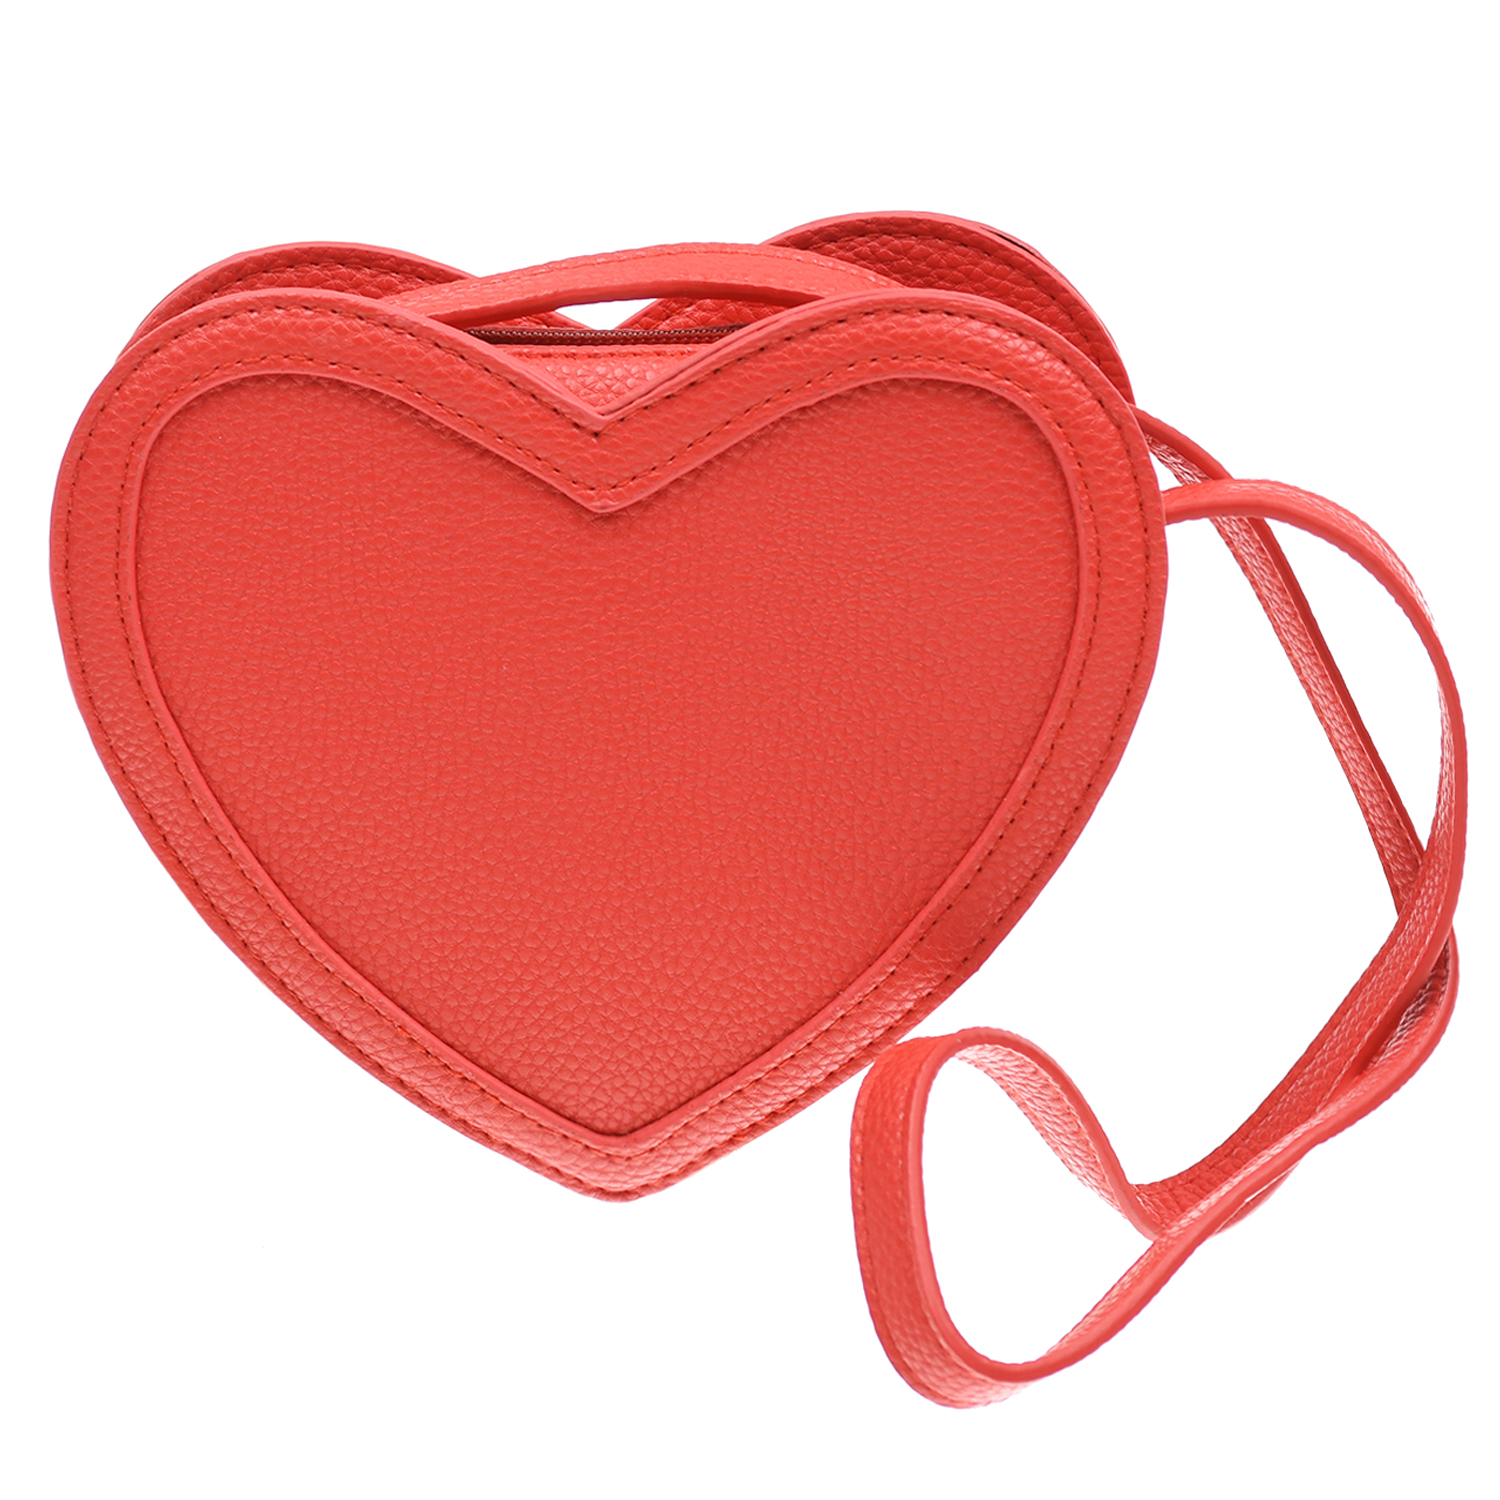 Красная сумка в форме сердца,14x18x4,5 см Molo детская, размер unica, цвет красный